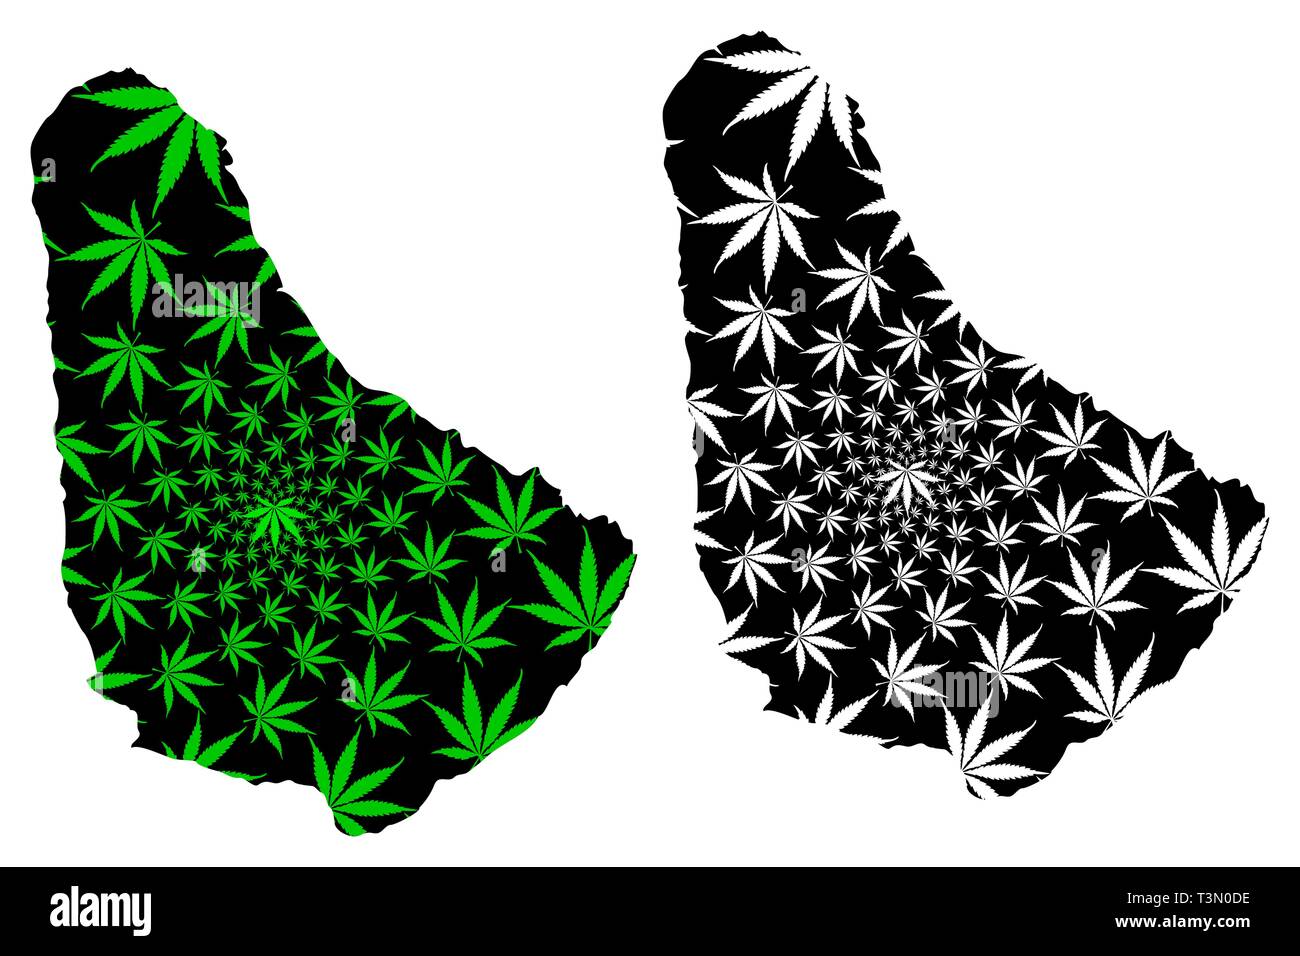 - Mapa de Barbados está diseñado cannabis hoja verde y negro, Barbados mapa de la isla de marihuana la marihuana (THC), follaje, Ilustración del Vector